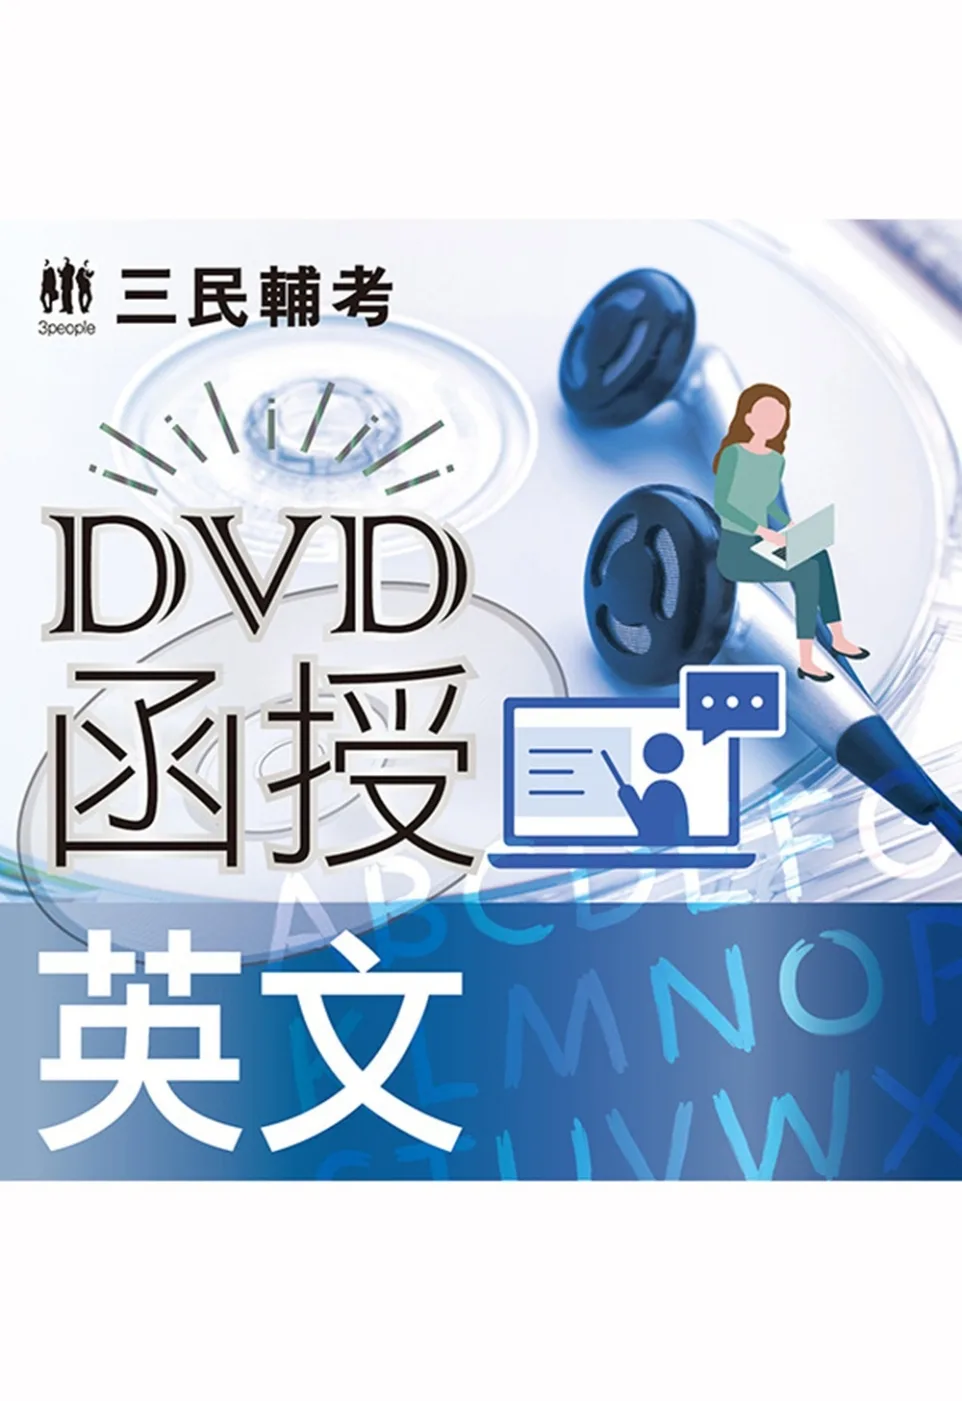 英文[DVD課程](適用國營、警察、鐵路、公職、銀行考試)